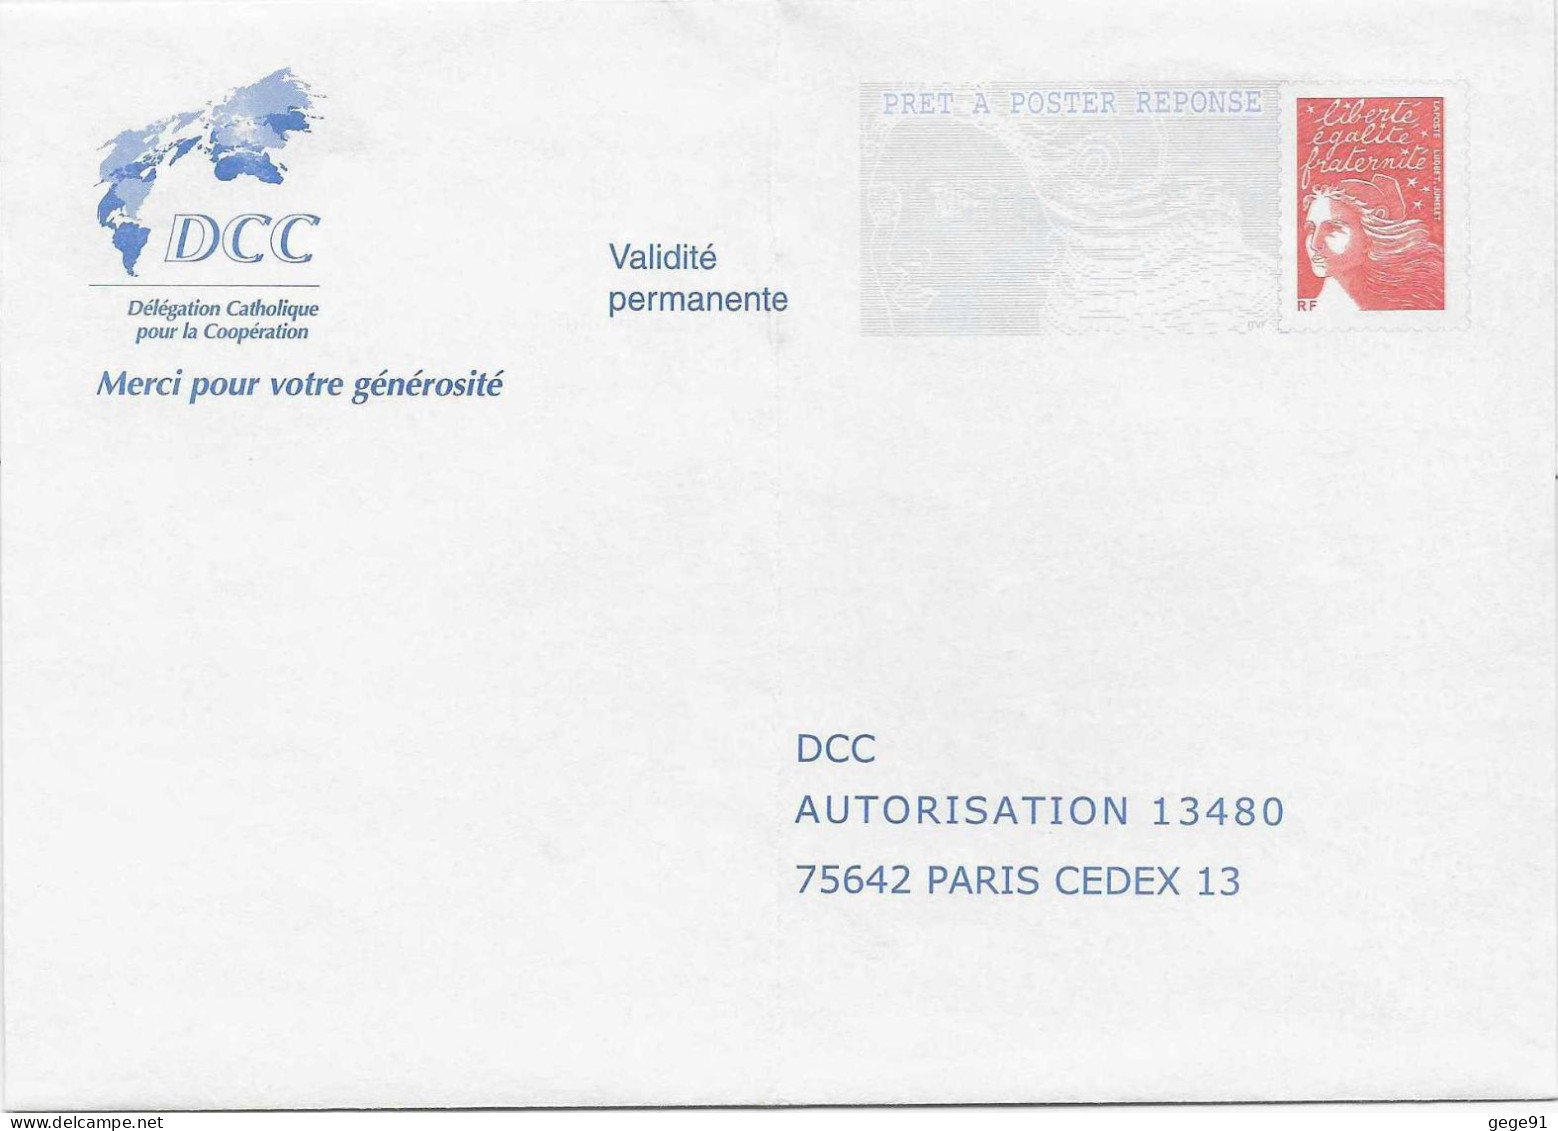 Pap Réponse Luquet - DCC - Délégation Catholique Pour La Coopération - Agrément 0304984 - Prêts-à-poster:Answer/Luquet